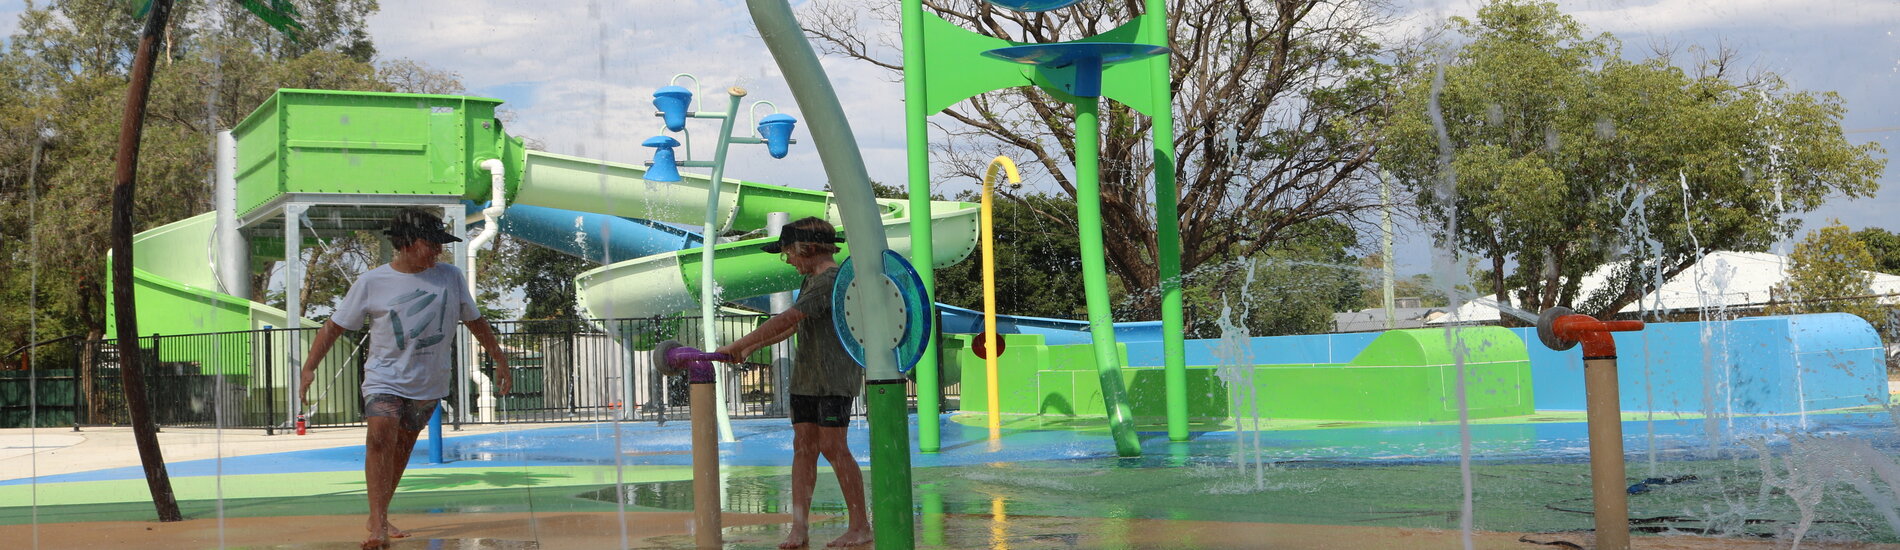 splash park slide